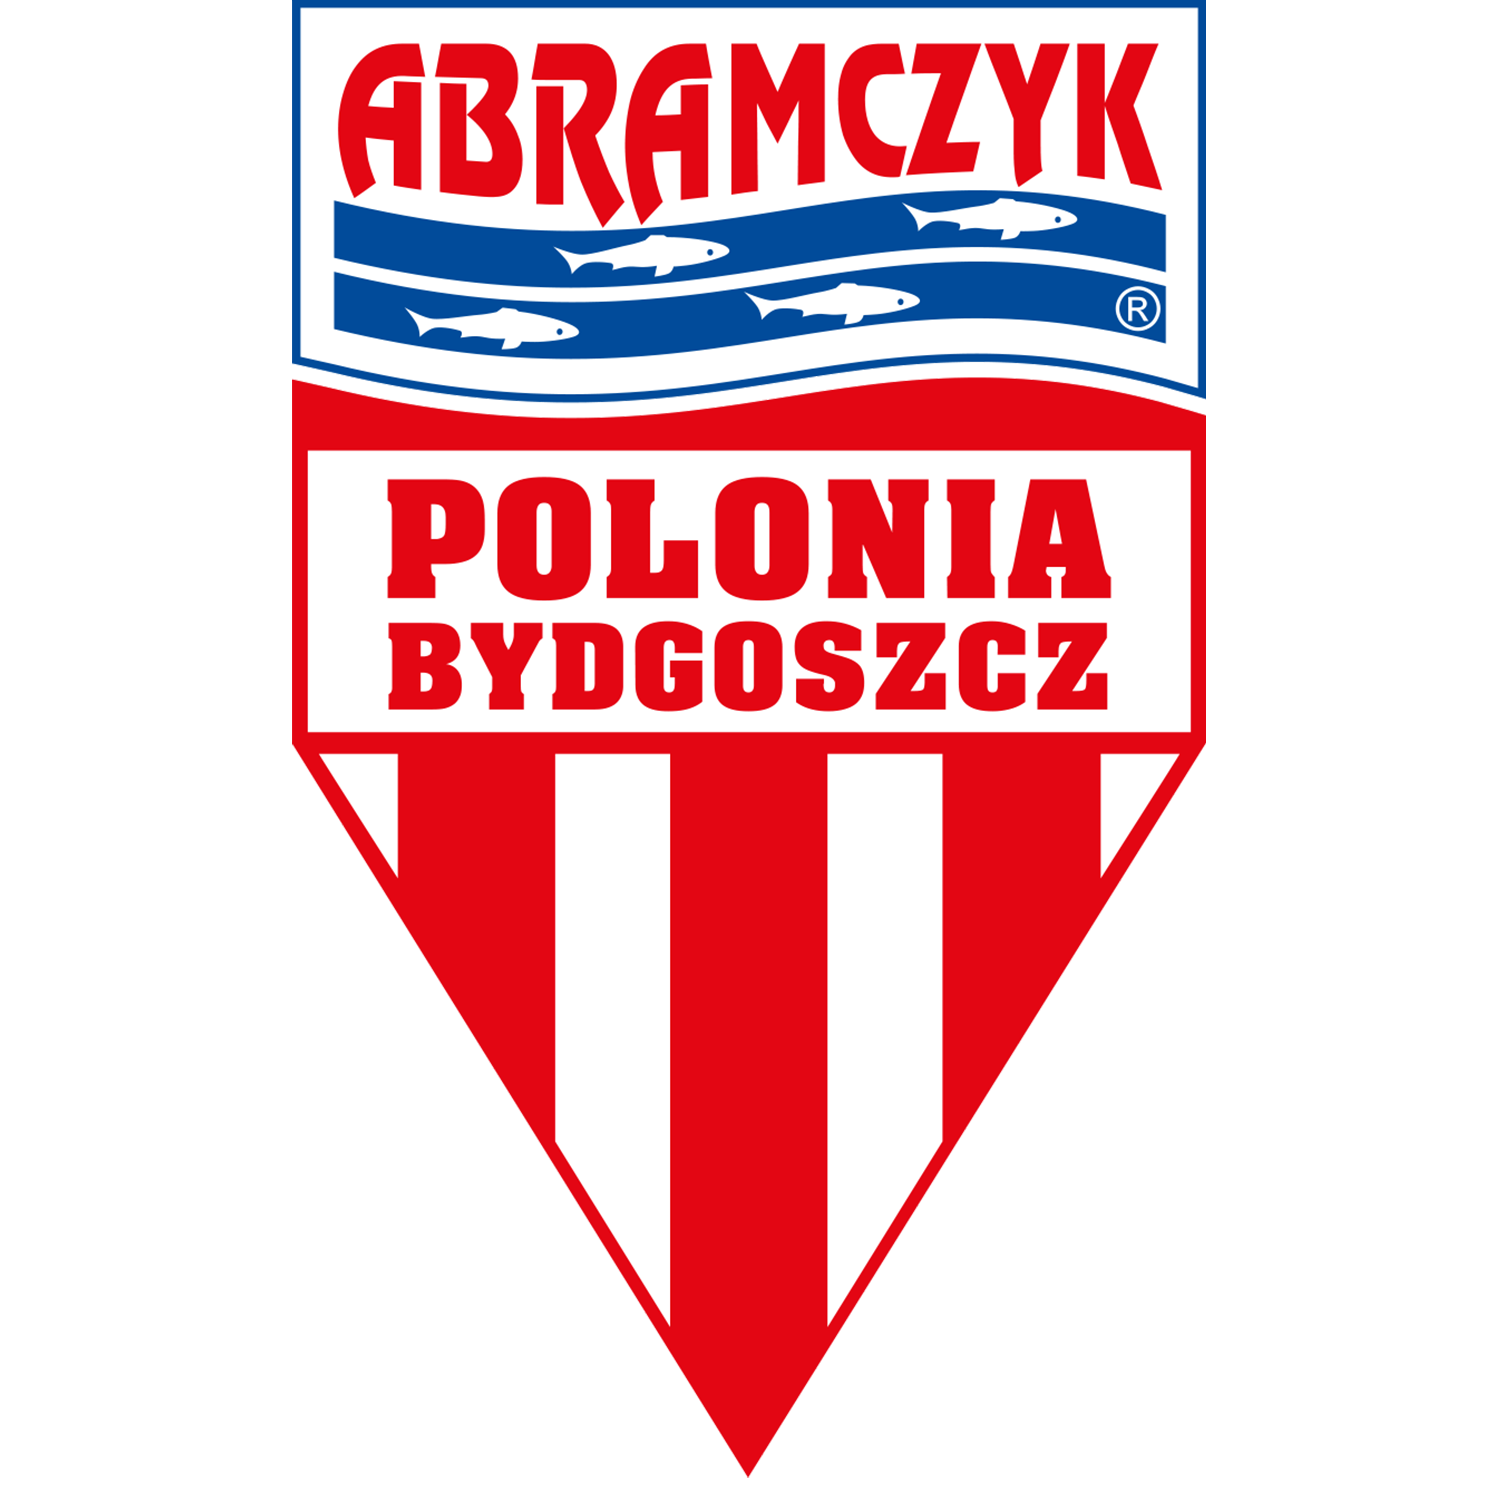 ABRAMCZYK_POLONIA_BYDGOSZCZ.png Logo